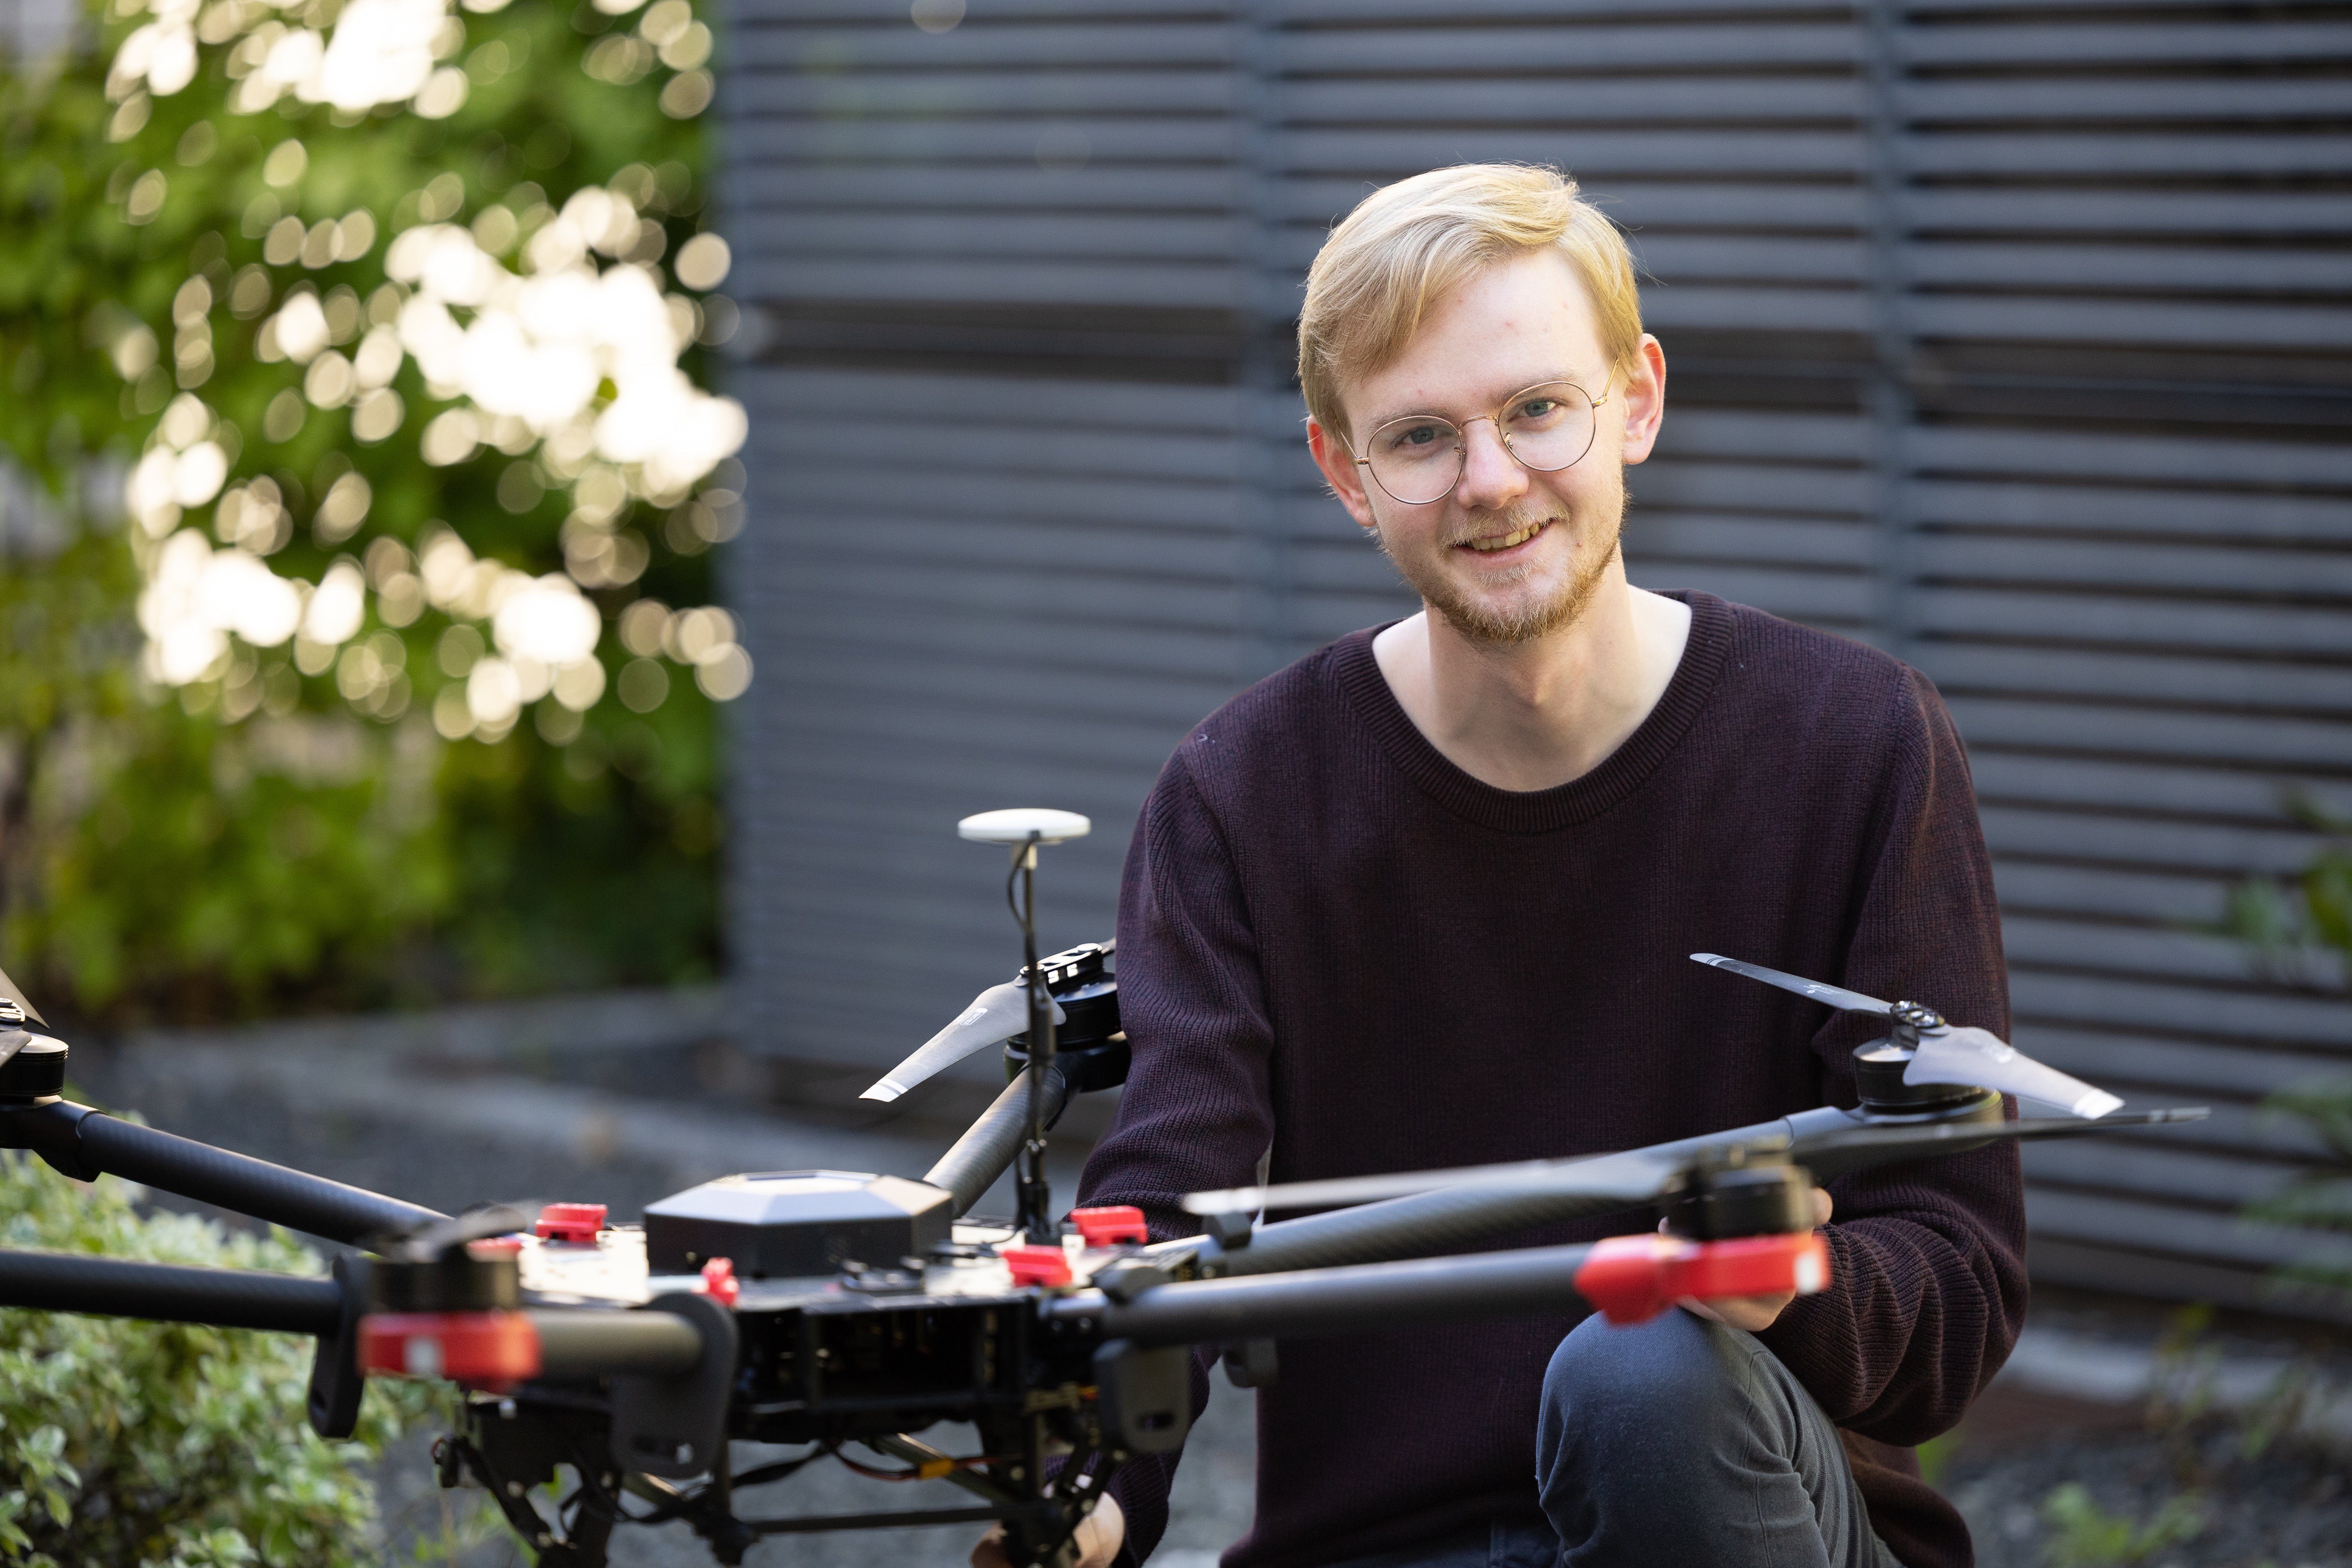 Vi trues af livsfarlige droner - Anders med til at finde løsning